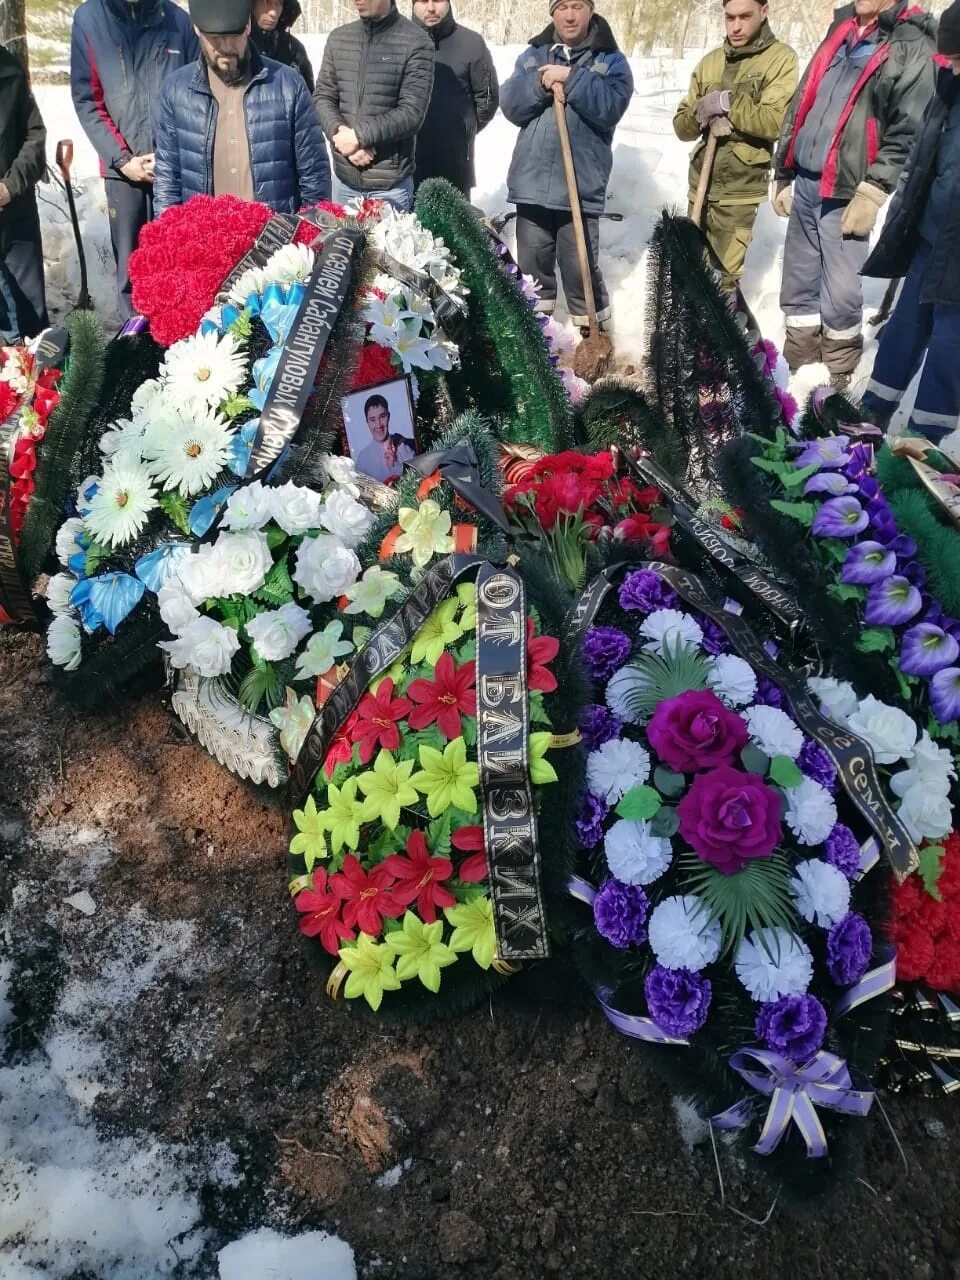 Сколько погибло из башкирии на сегодняшний. Могилы погибших на Украине. Погибшие из Башкирии на Украине. Кладбище в марте.